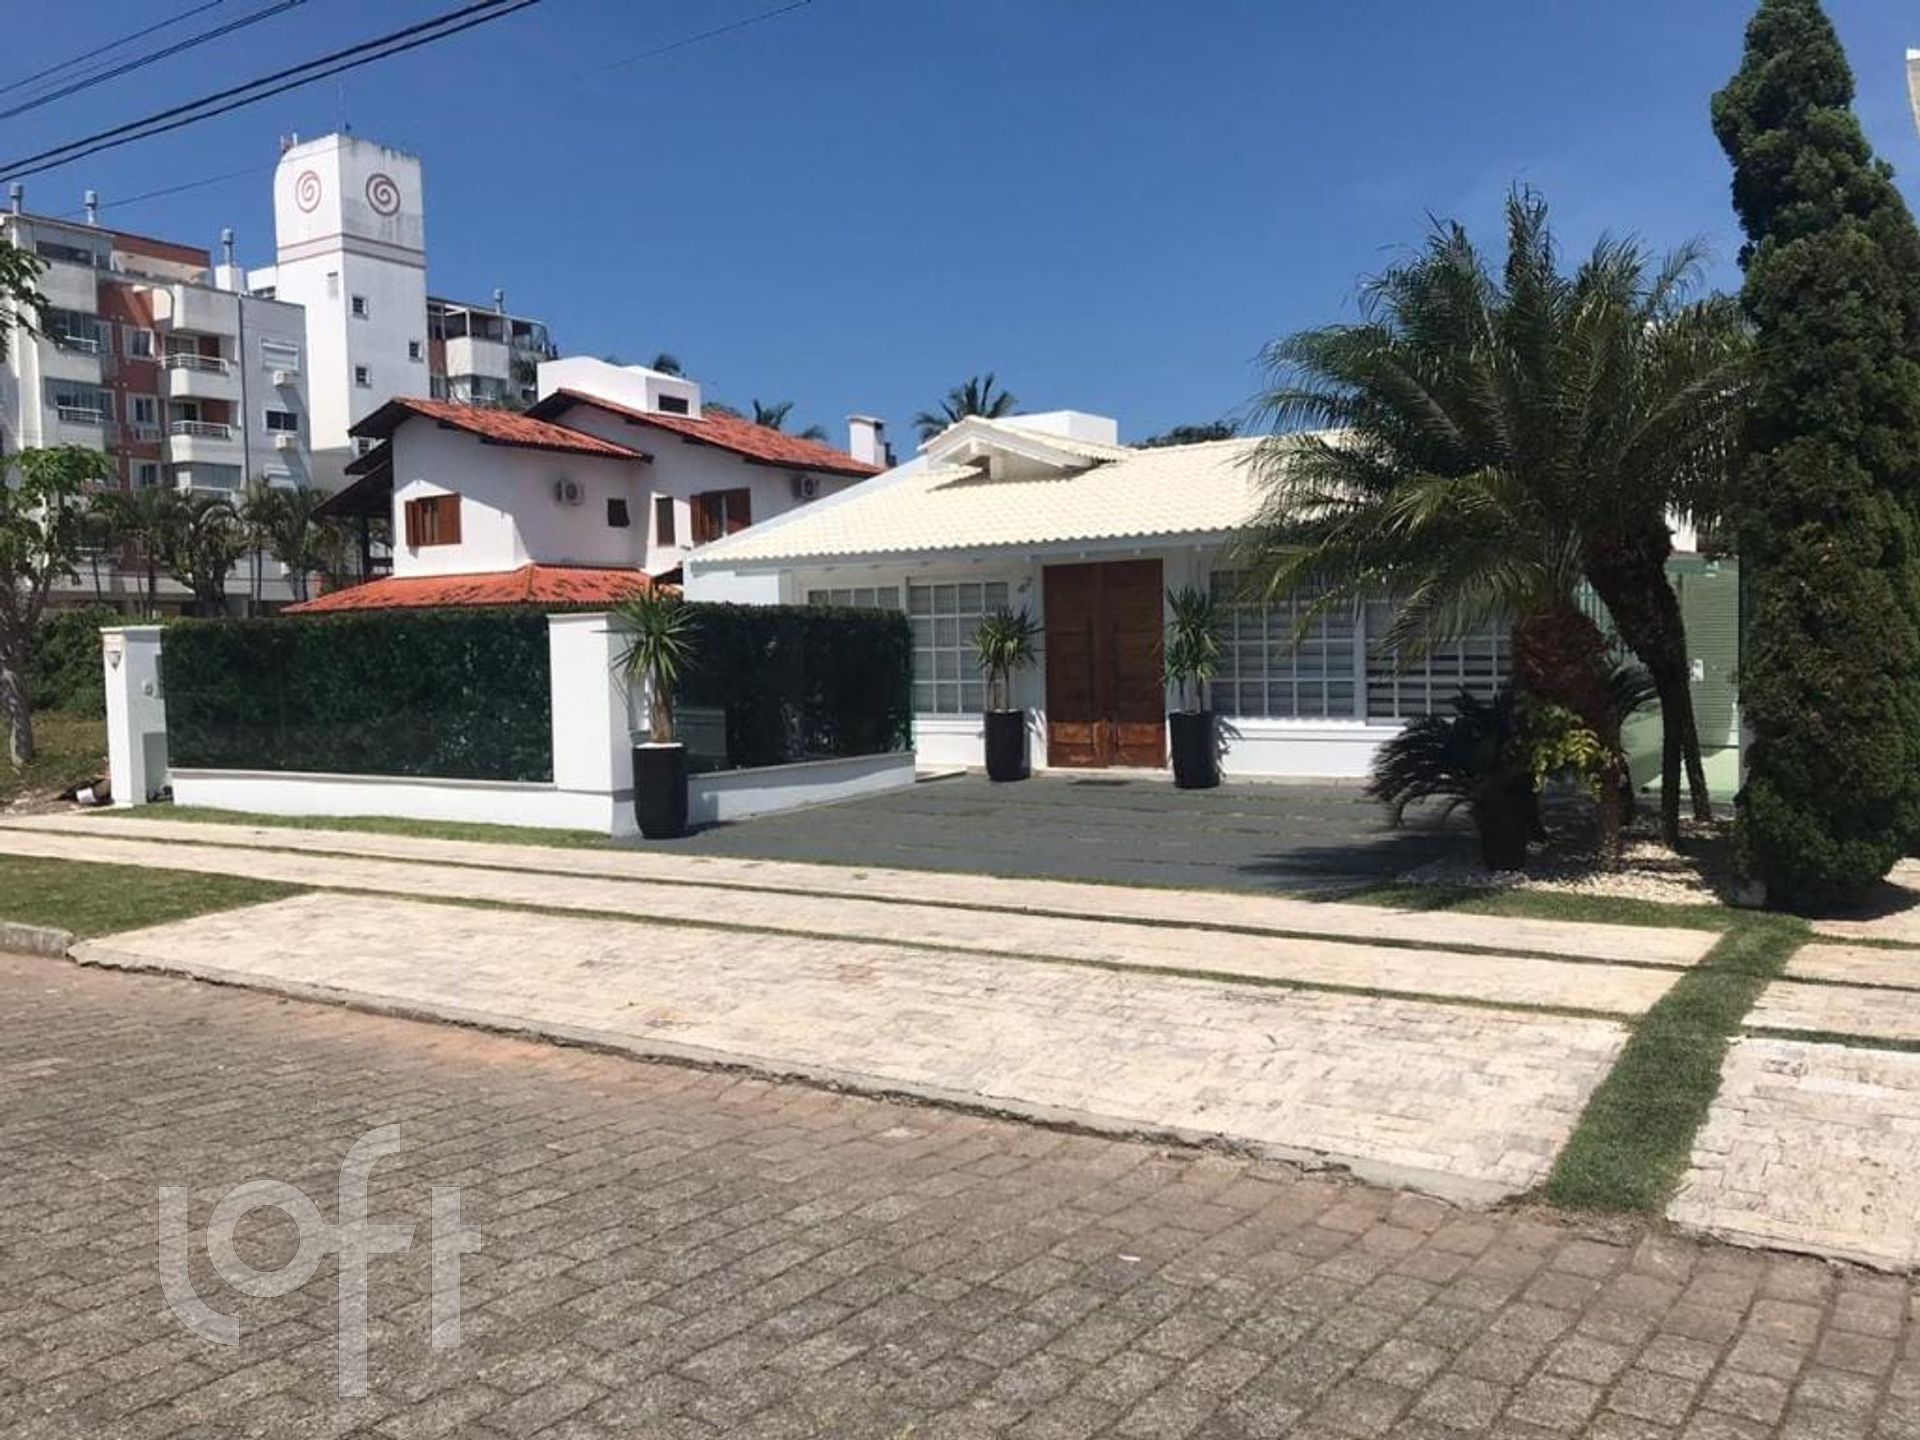 VENDA &#8211; Casa em Condomínio de 4 quartos no bairro Jurere Oeste, Florianópolis &#8211; PUngclns